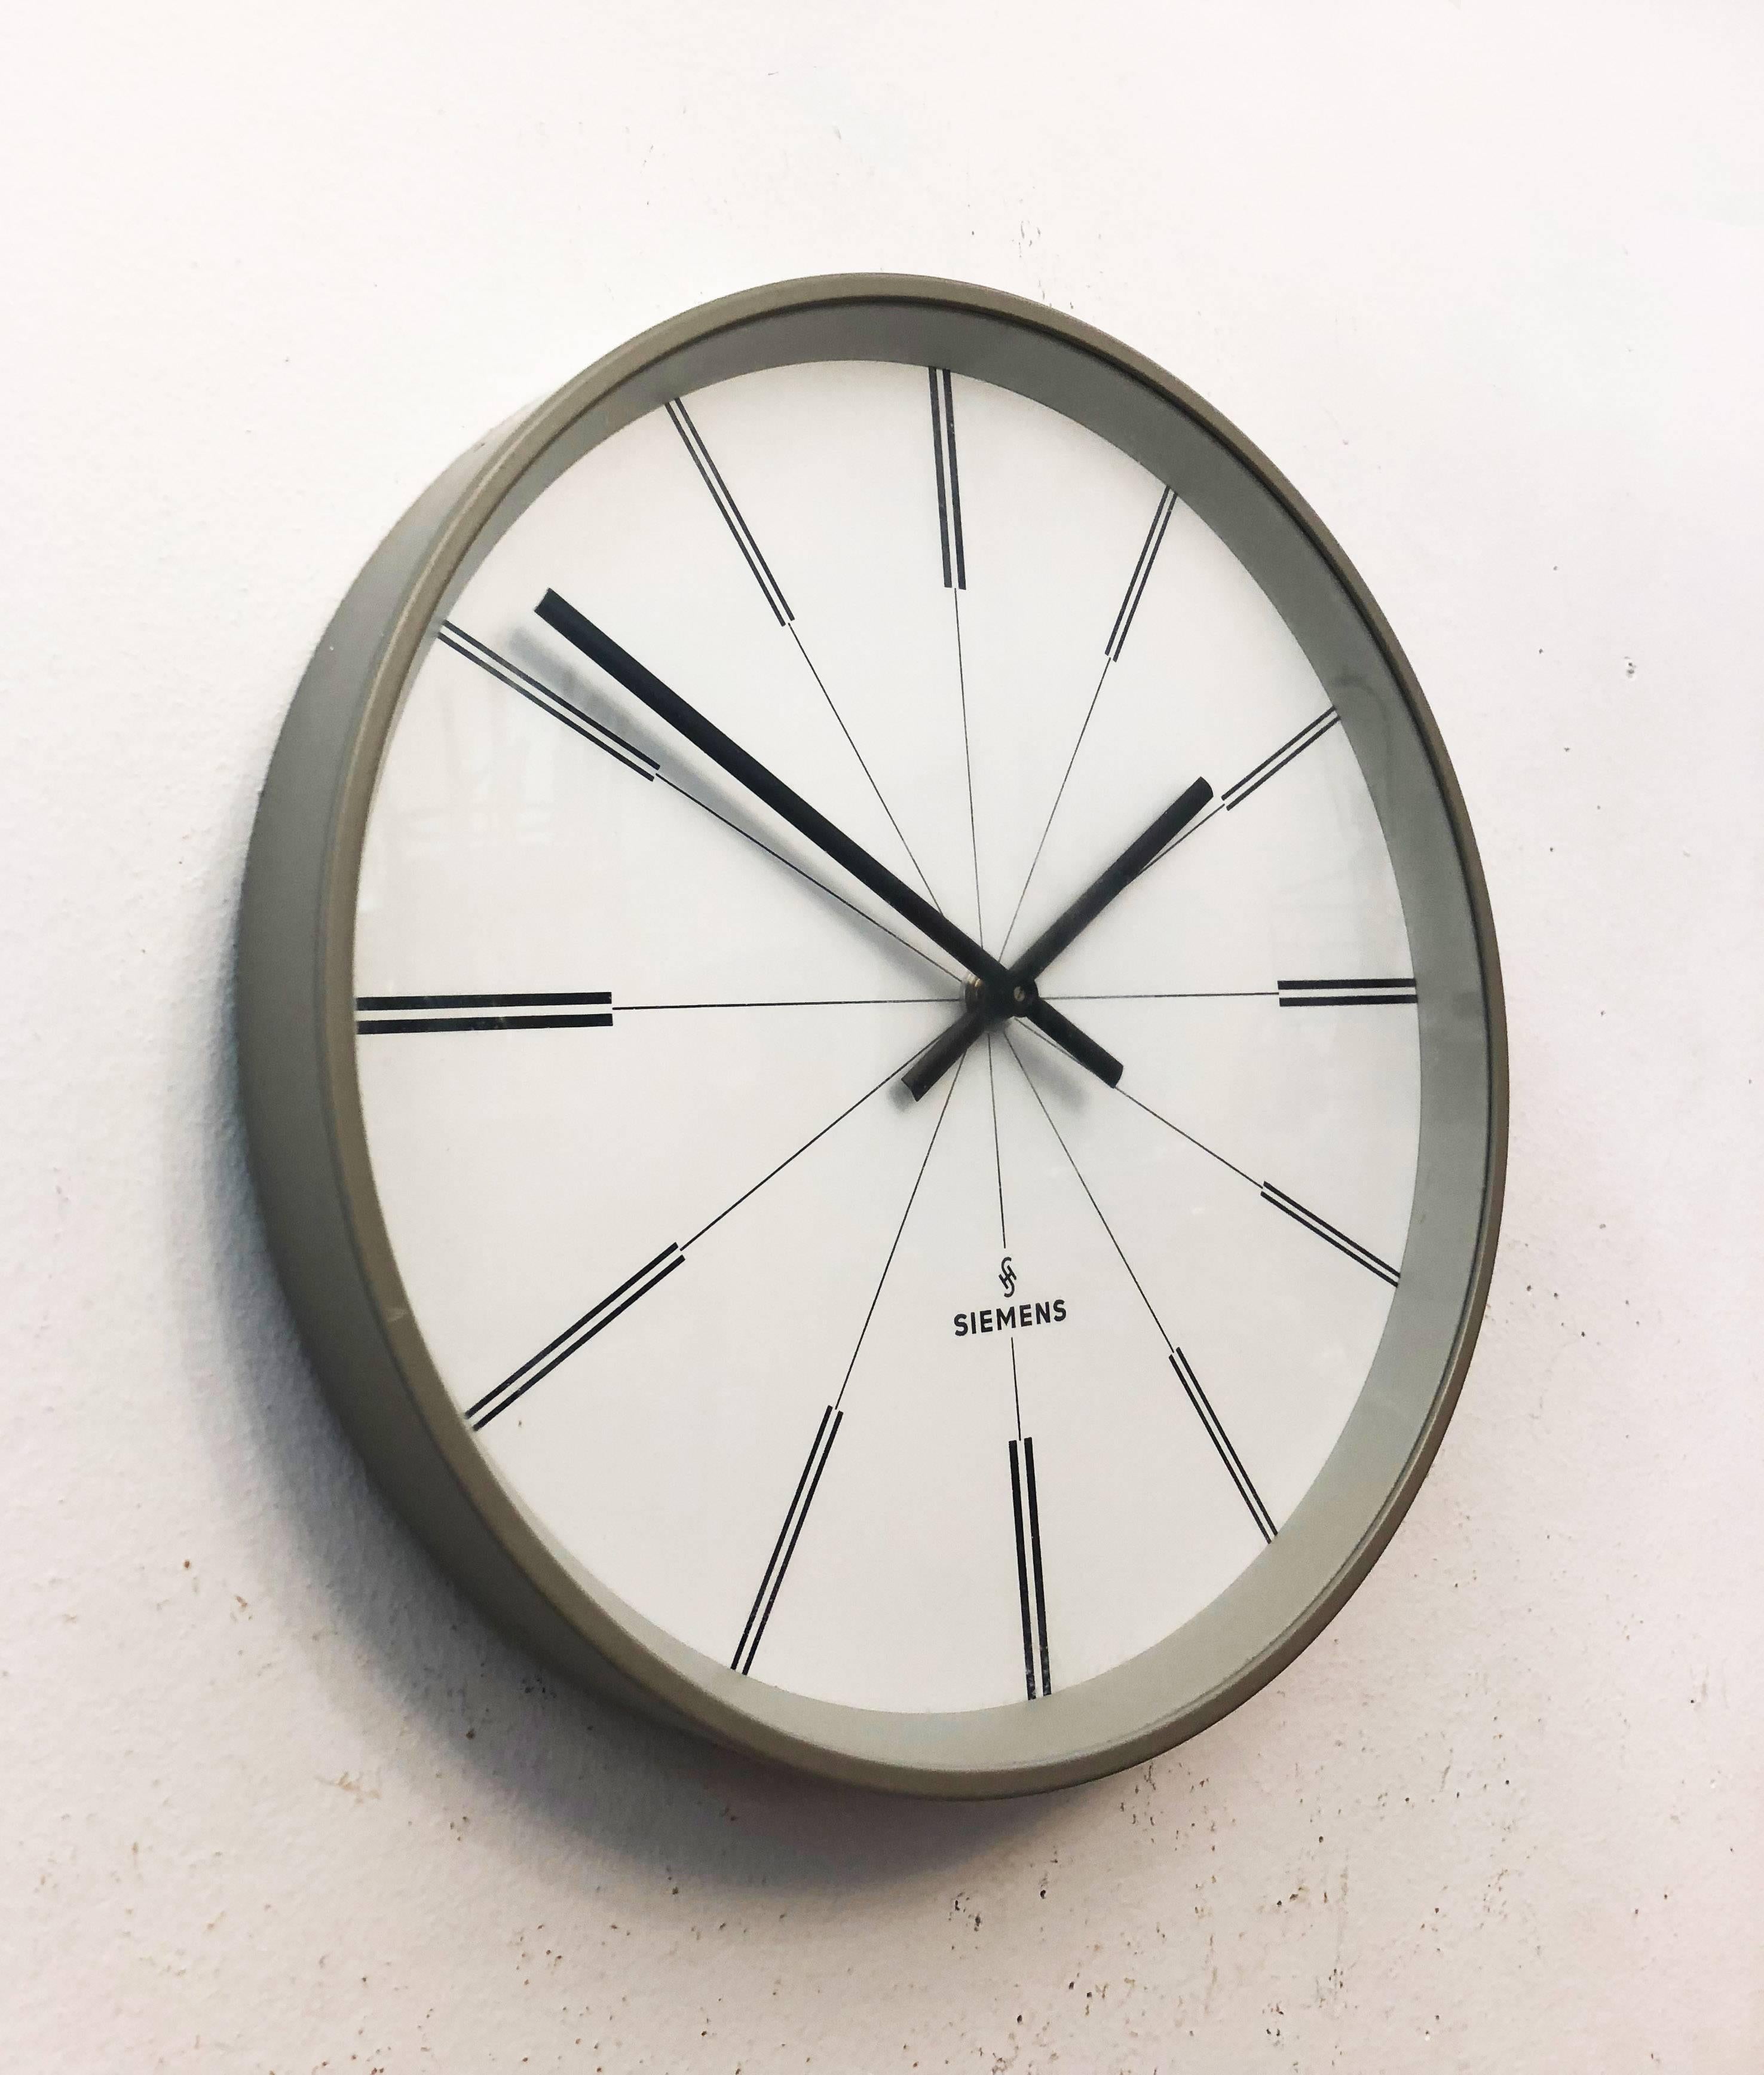 Acier peint avec façade en verre fabriqué en Allemagne dans les années 1960.
Ancienne horloge d'esclave, elle est aujourd'hui équipée d'un mouvement moderne à quartz avec batterie. Le délai de livraison est d'environ 2 semaines.